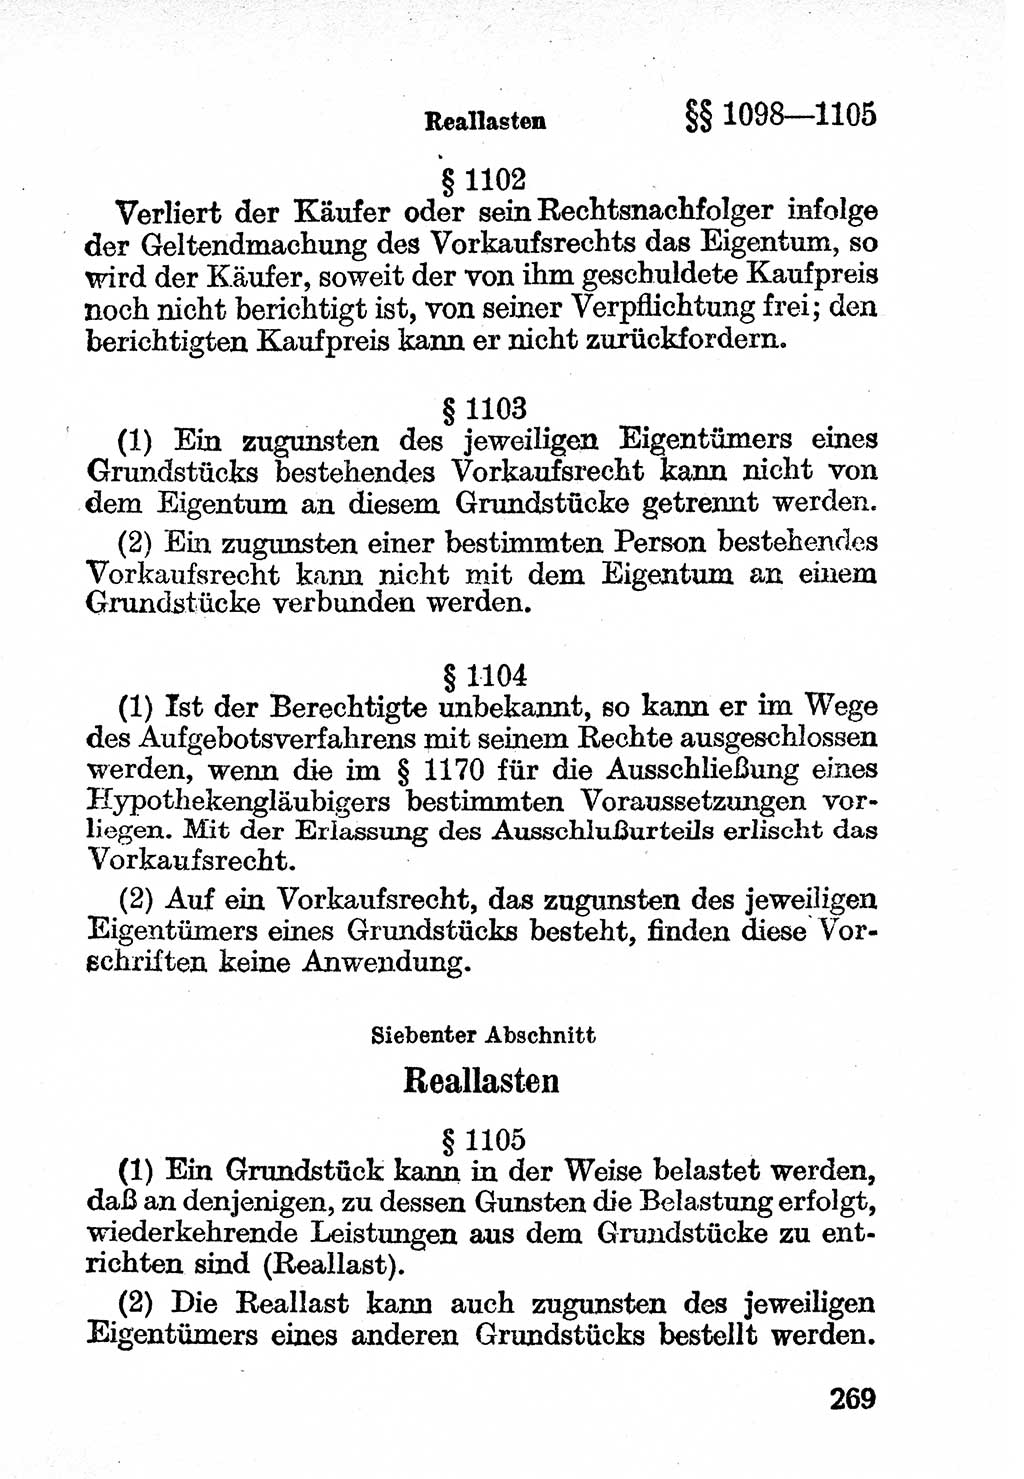 Bürgerliches Gesetzbuch (BGB) nebst wichtigen Nebengesetzen [Deutsche Demokratische Republik (DDR)] 1956, Seite 269 (BGB Nebenges. DDR 1956, S. 269)